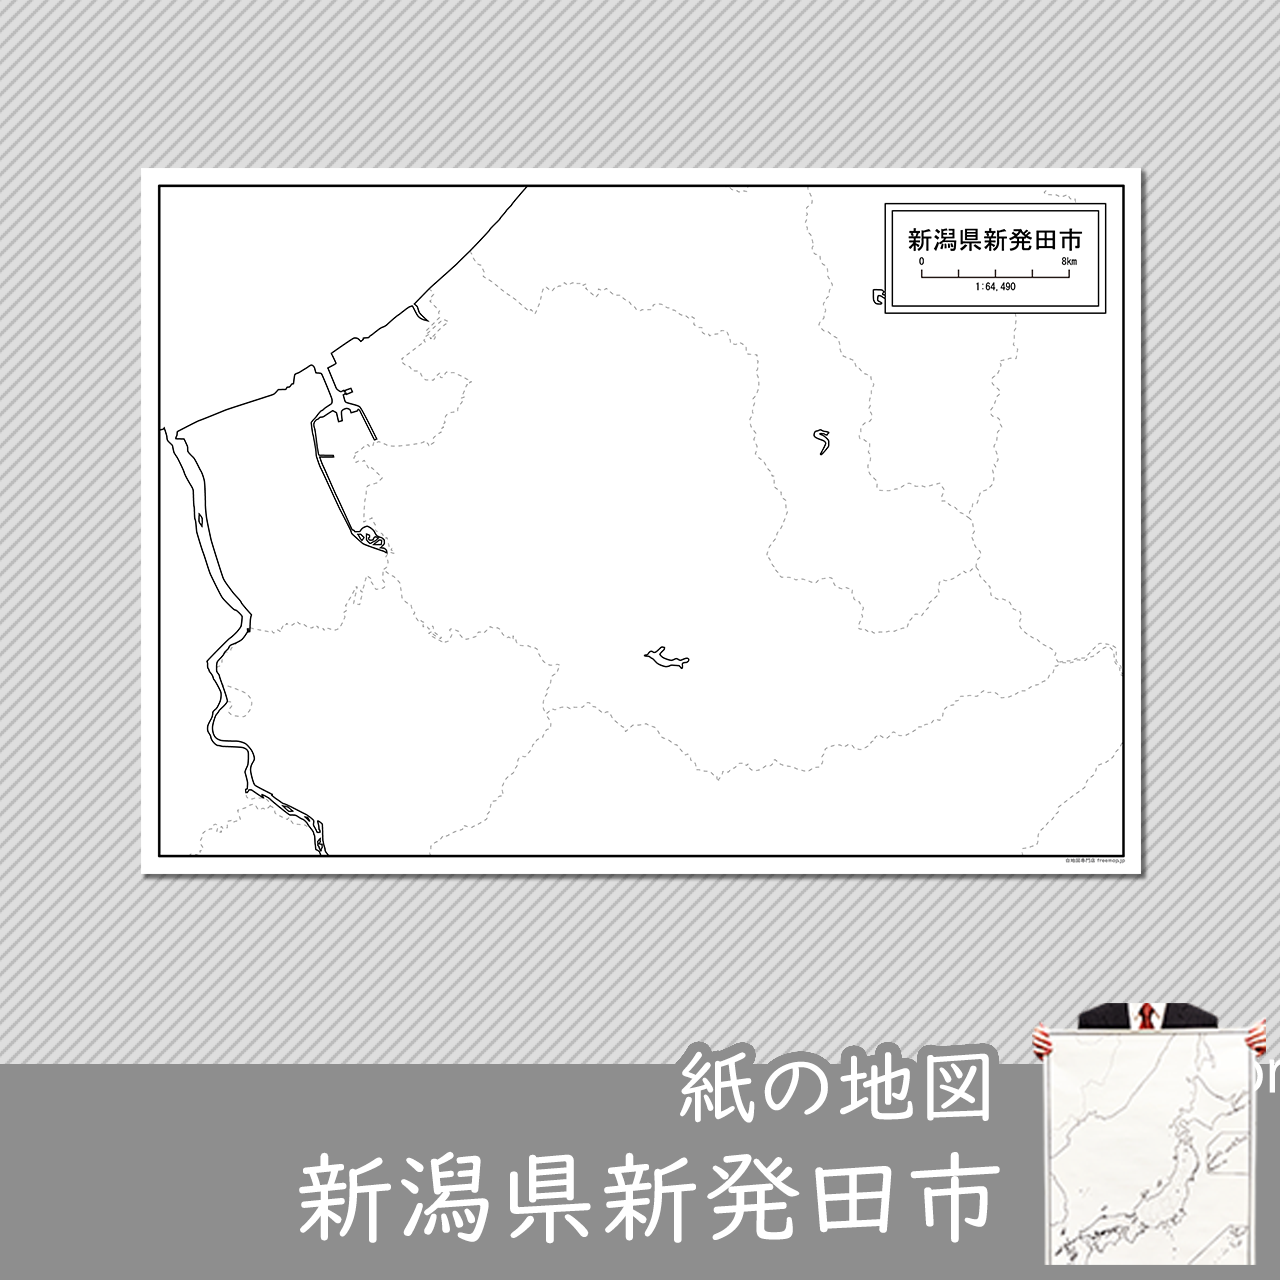 新発田市の紙の白地図のサムネイル